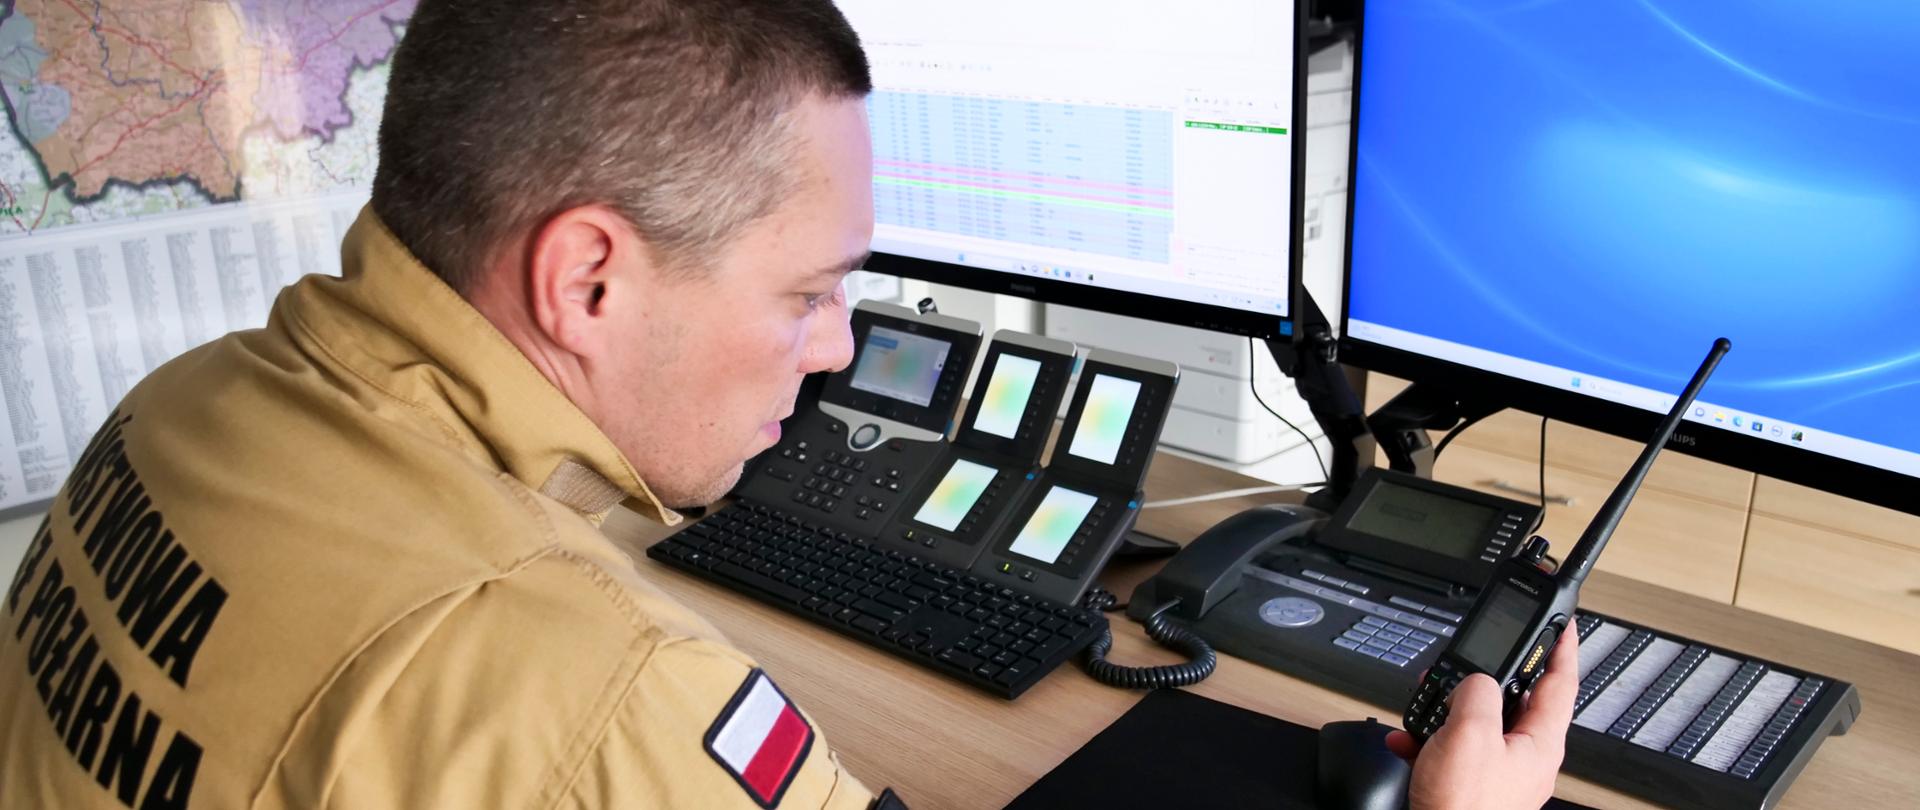 Strażak w mundurze musztardowym siedzi przy stole na którym leżą radiotelefony oraz są przymocowane monitory funkcjonariusz w ręce trzyma radiotelefon.